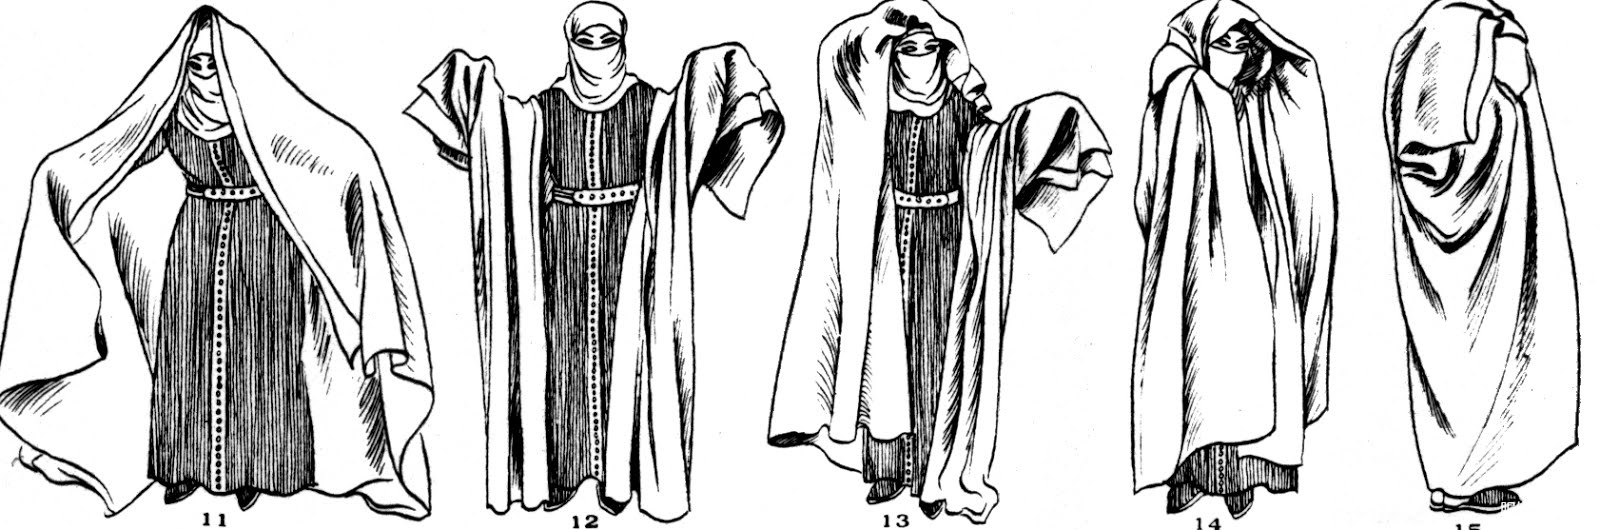 伊斯兰教的服装